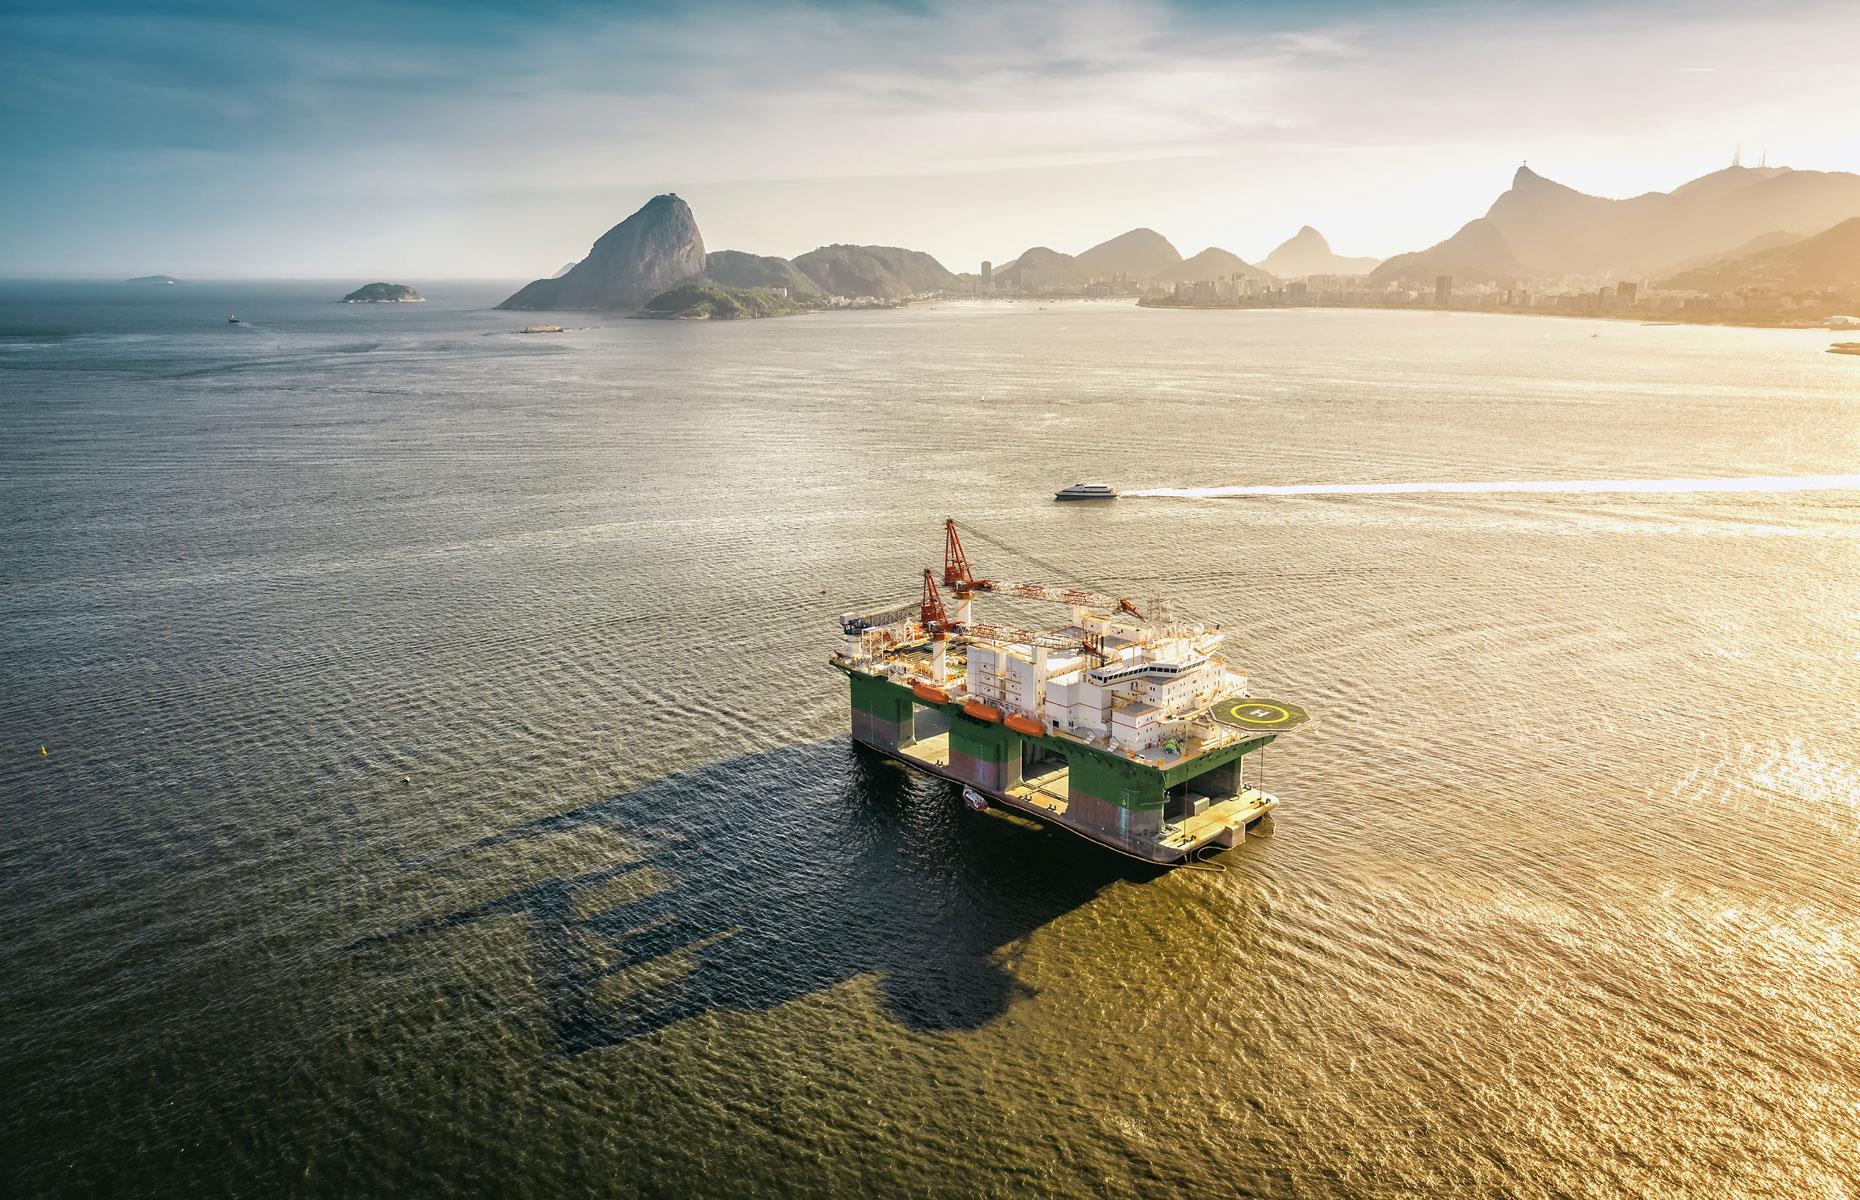 9. Brazil: 3.107 million barrels per day